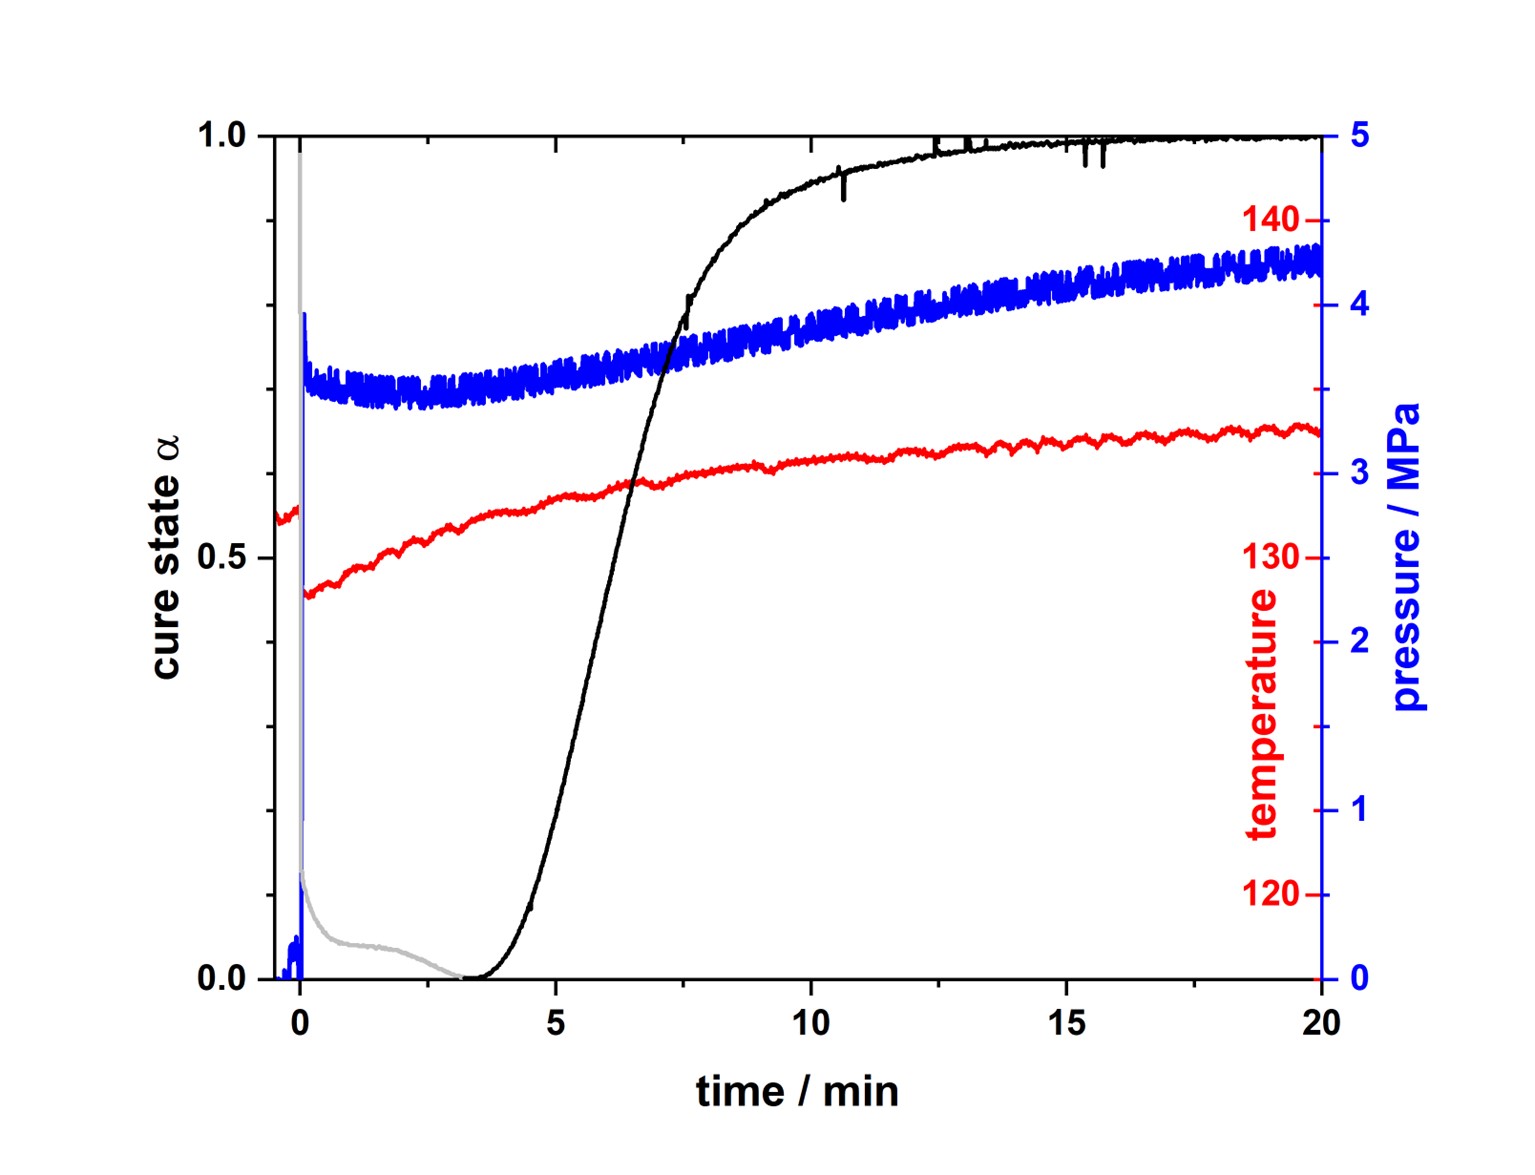 Gleichzeitige Messung des Aushärtegrades (schwarz), der Temperatur (rot) sowie des Druckes (blau) während des Compression Mold Prozesses. Der Zeitpunkt 0 markiert das Schliessen des Werkzeuges.